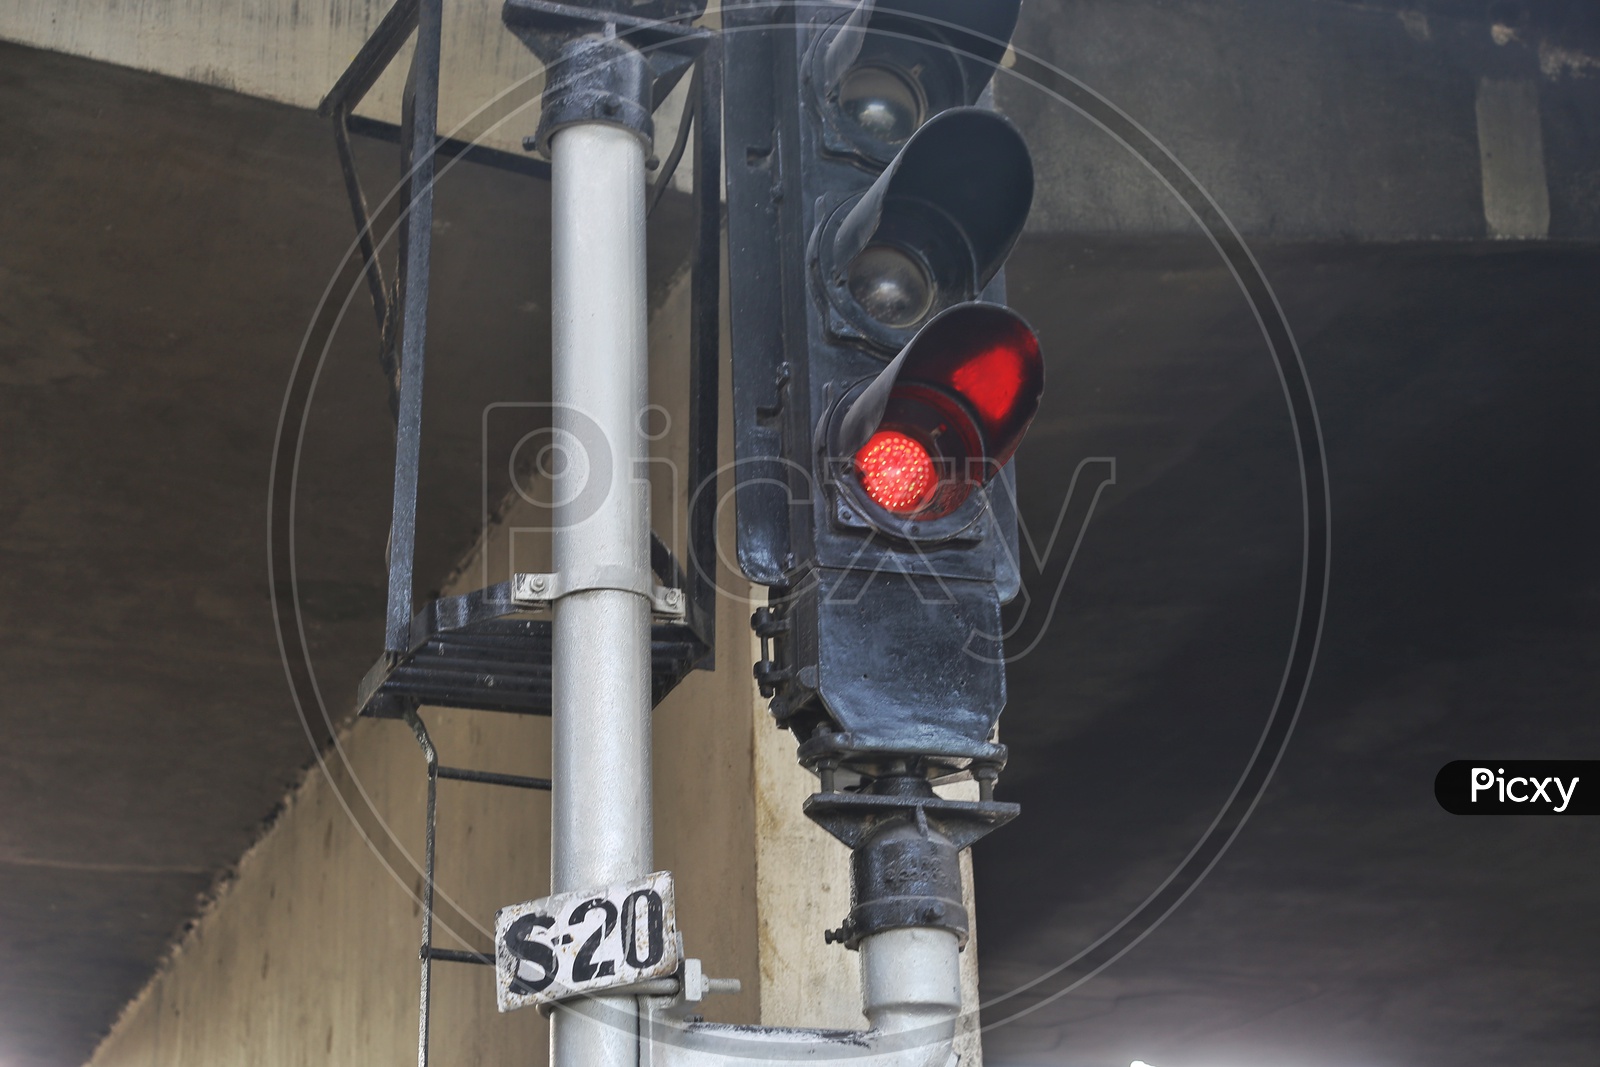 Indian railways traffic signal